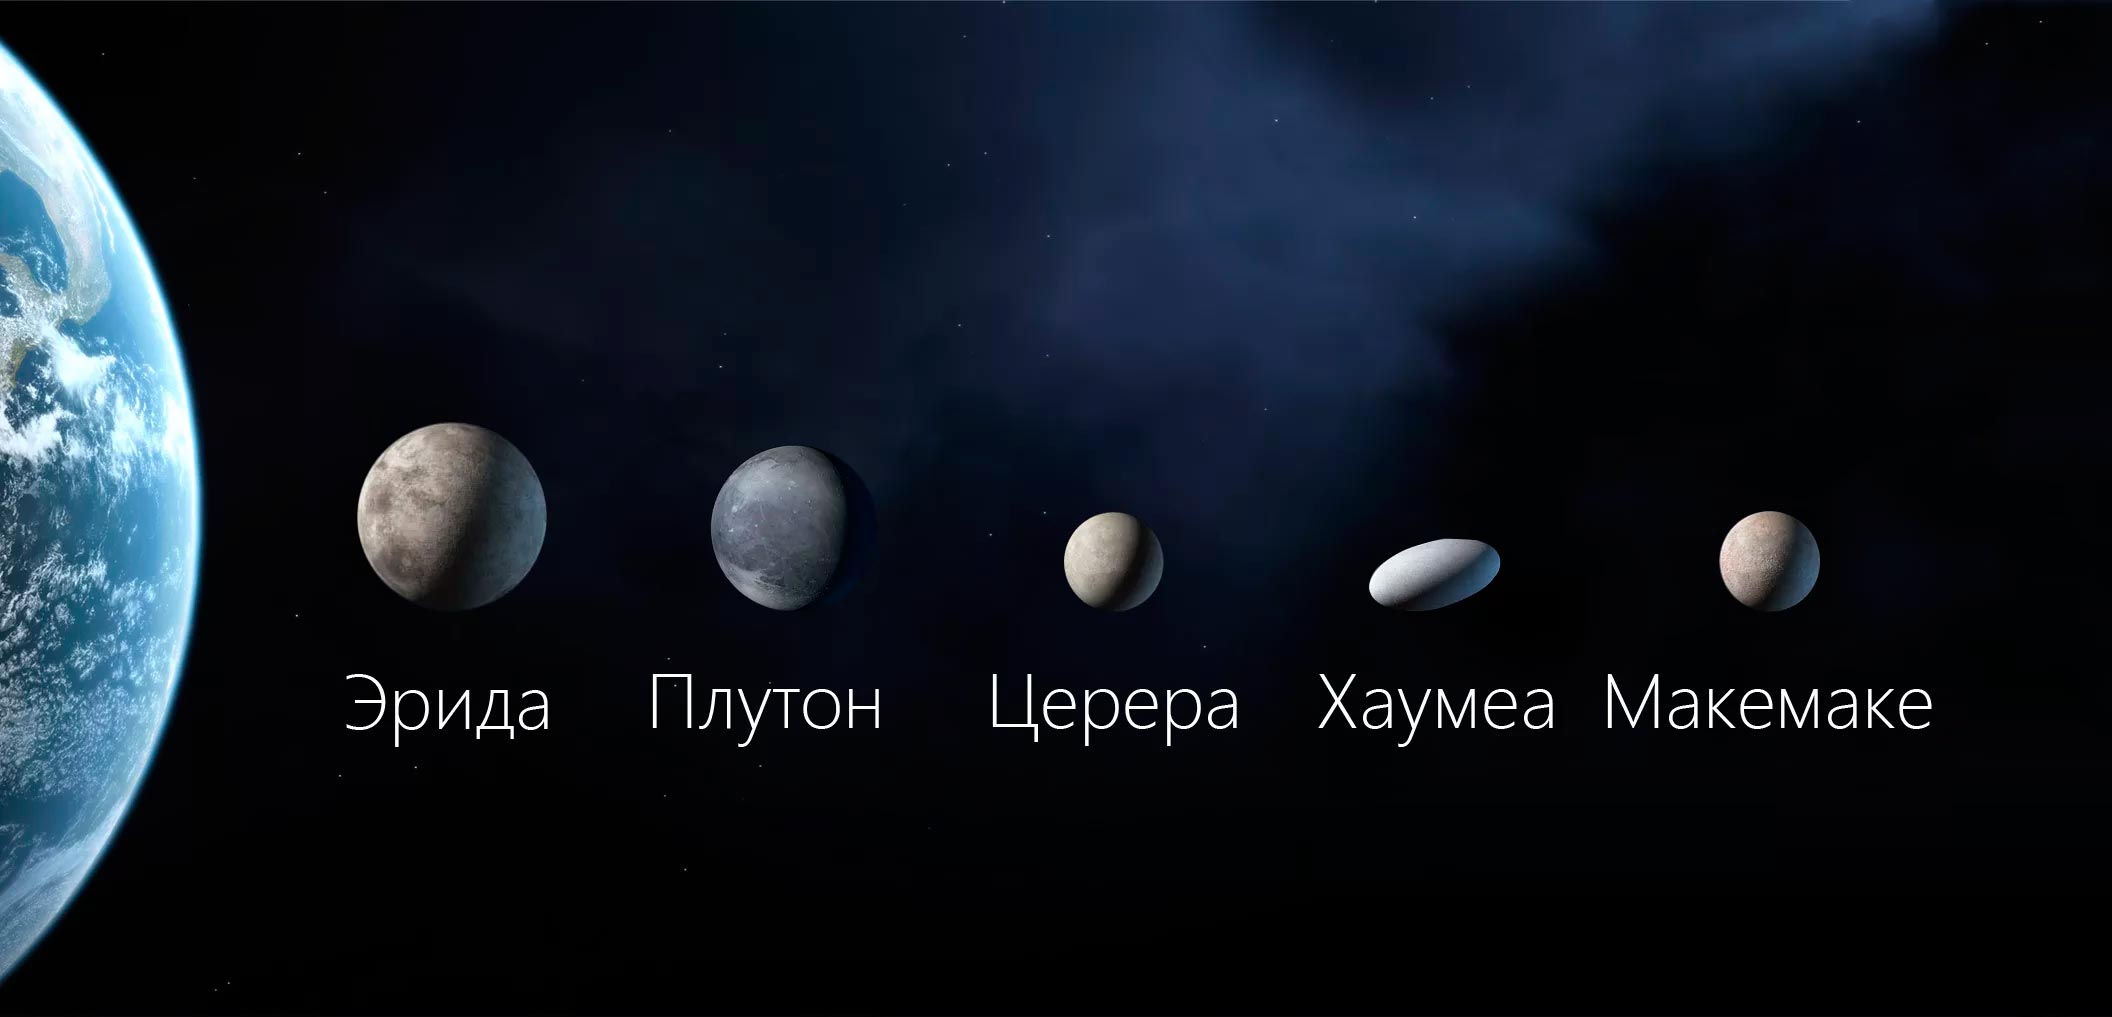 Церера Плутон Карликовые планеты